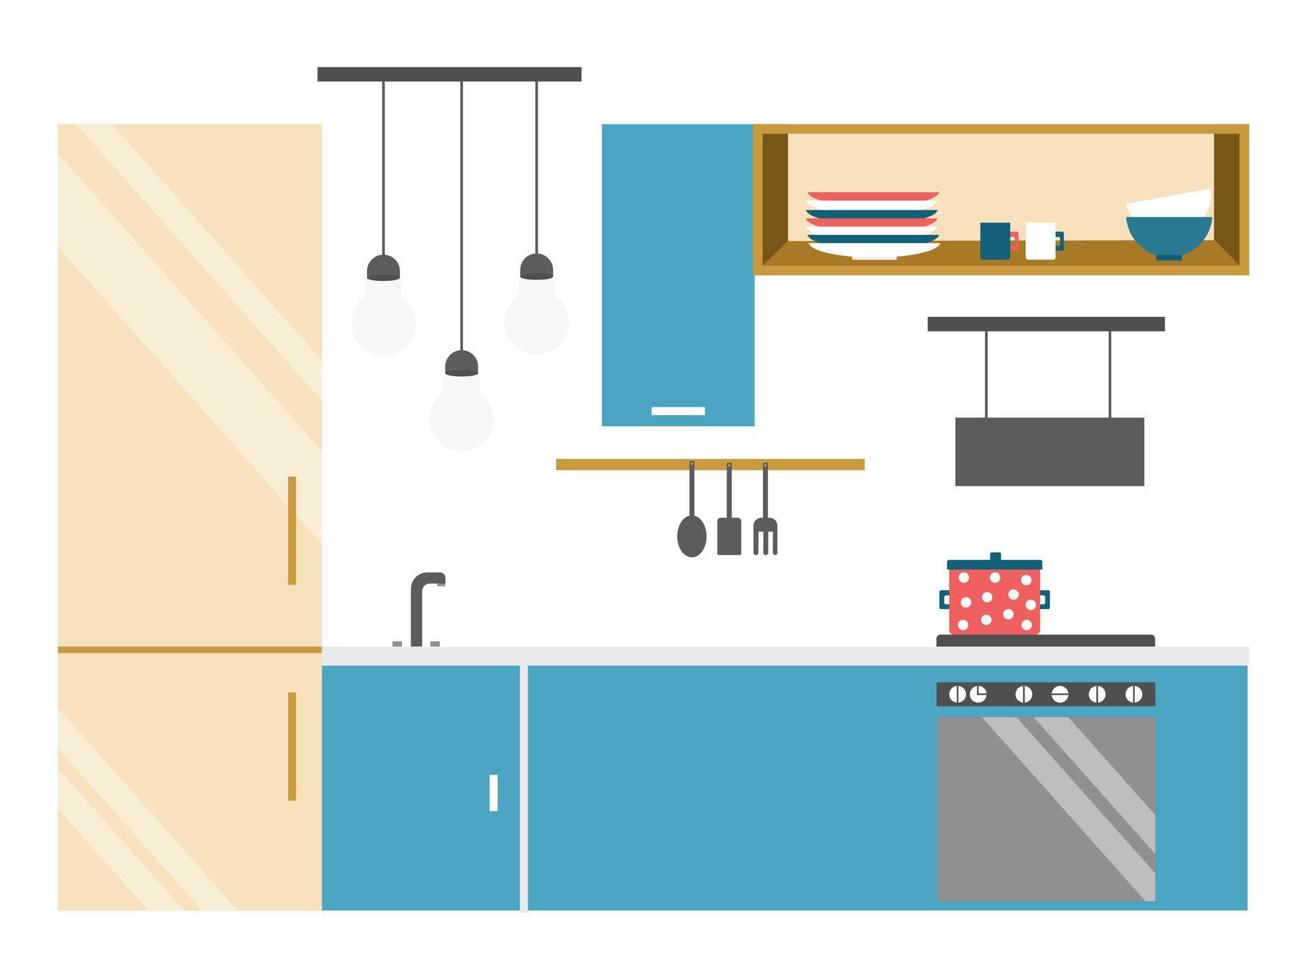 Küchenbauer im flachen Stil mit Möbeln und Küchenzubehör. Wohndesign. flache vektorillustration. Cartoon-Illustration. vektor